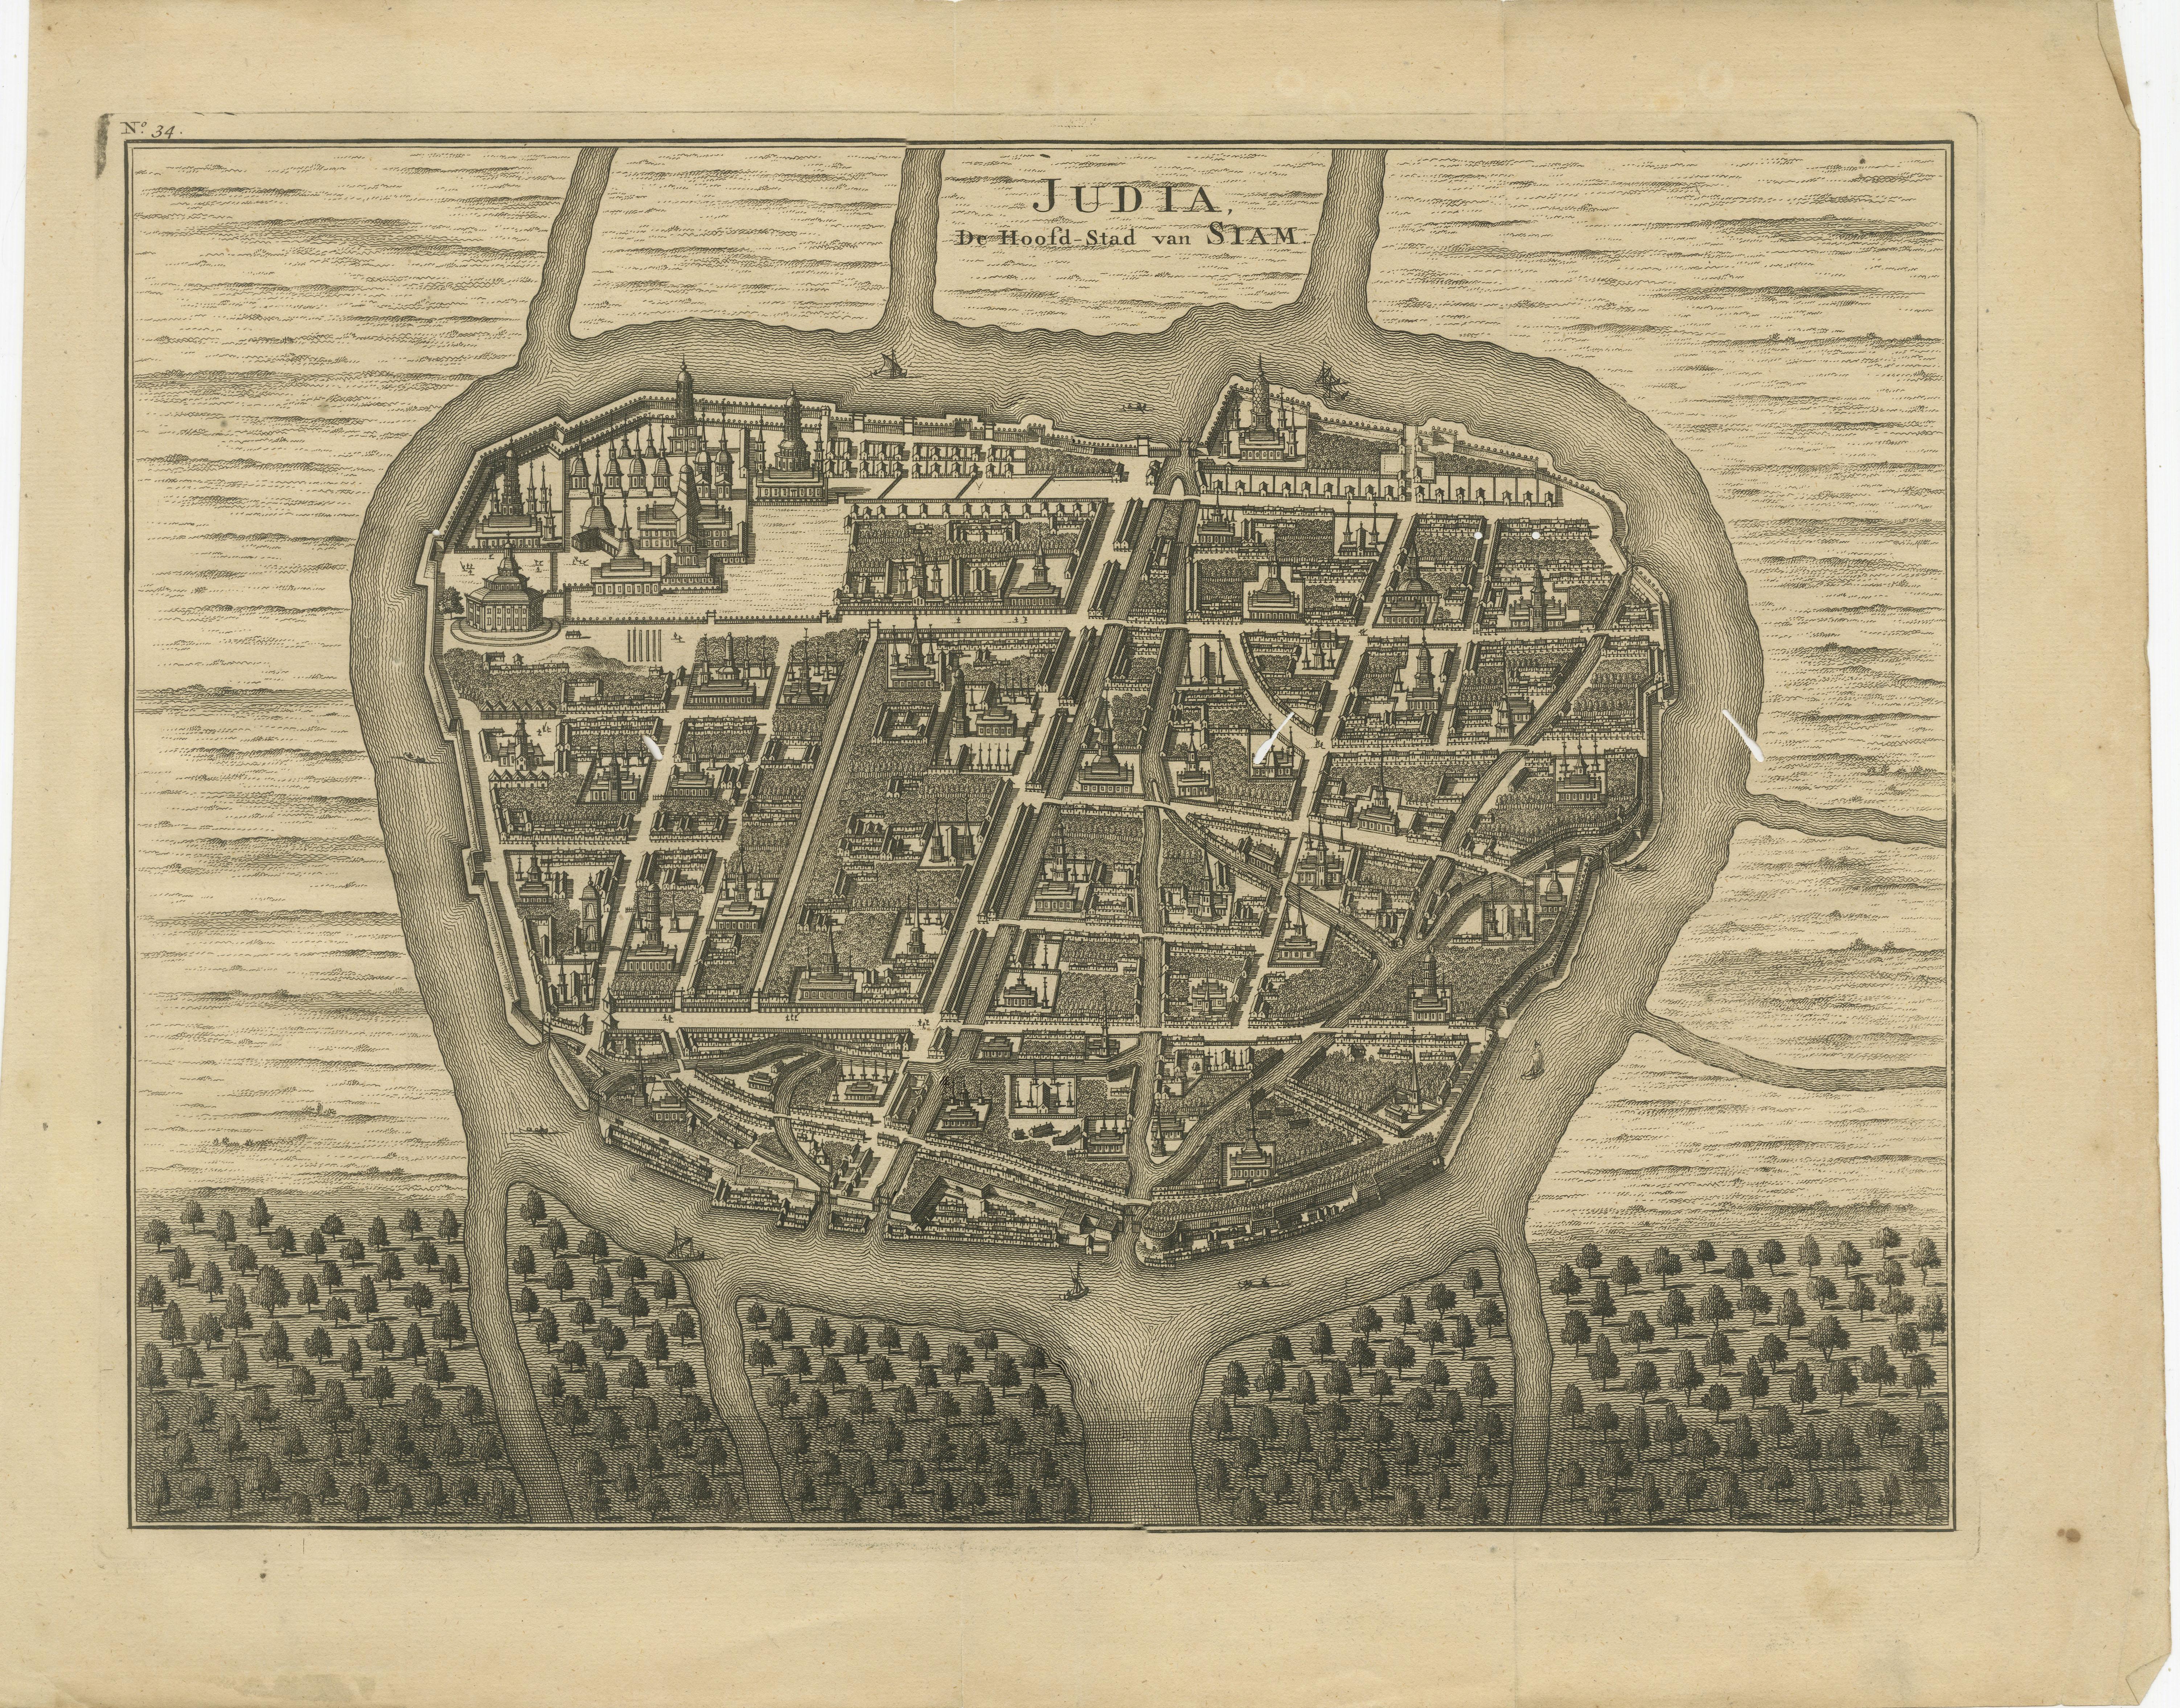 Antike Karte mit dem Titel 'Judia, De Hoofd-Stad van Siam'. Antiker Plan von Ayutthaya, der Hauptstadt von Siam (Thailand). Dieser Druck stammt aus 